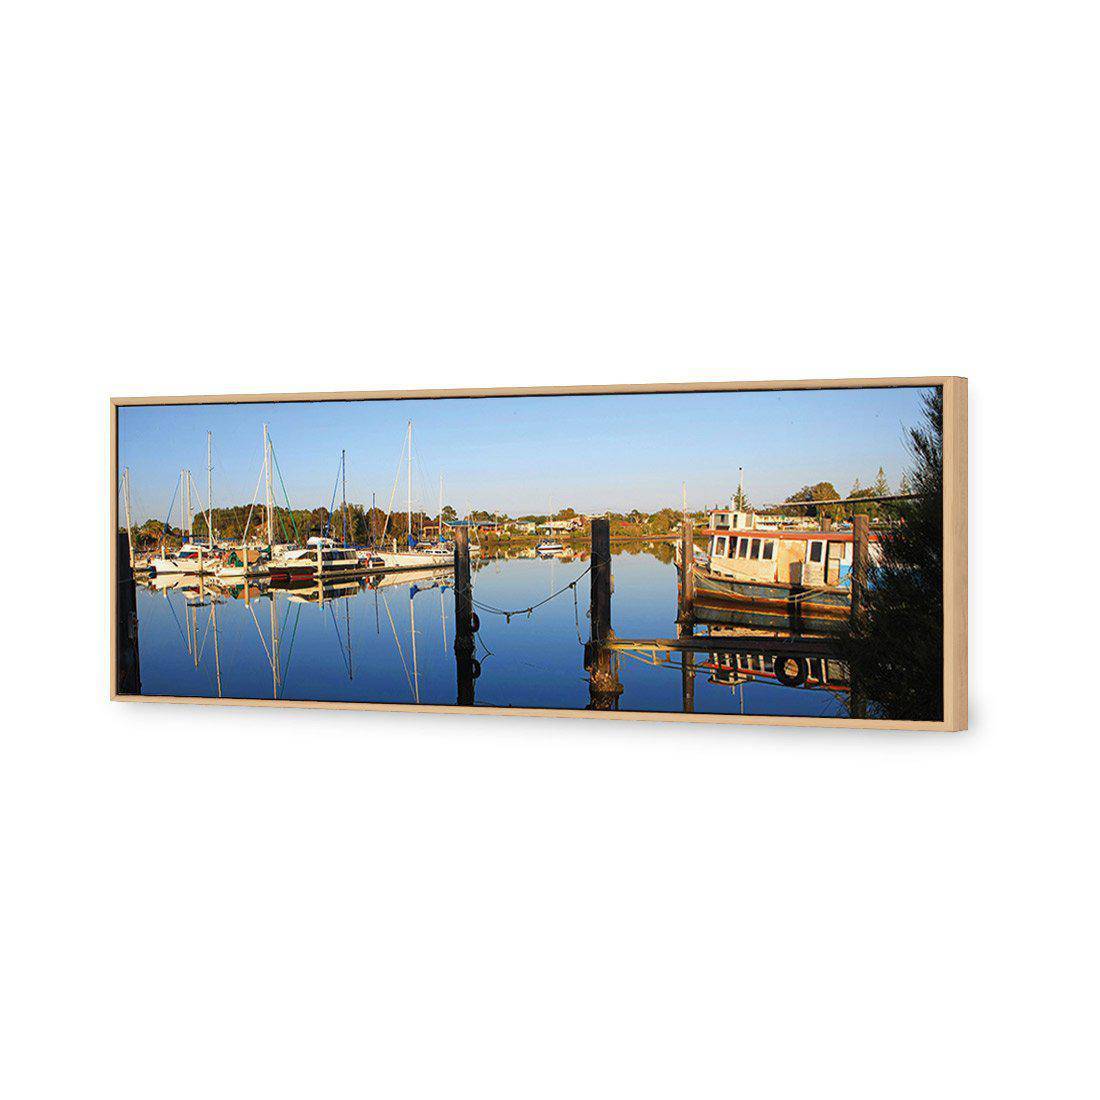 Yamba Water Reflections Canvas Art-Canvas-Wall Art Designs-60x20cm-Canvas - Oak Frame-Wall Art Designs